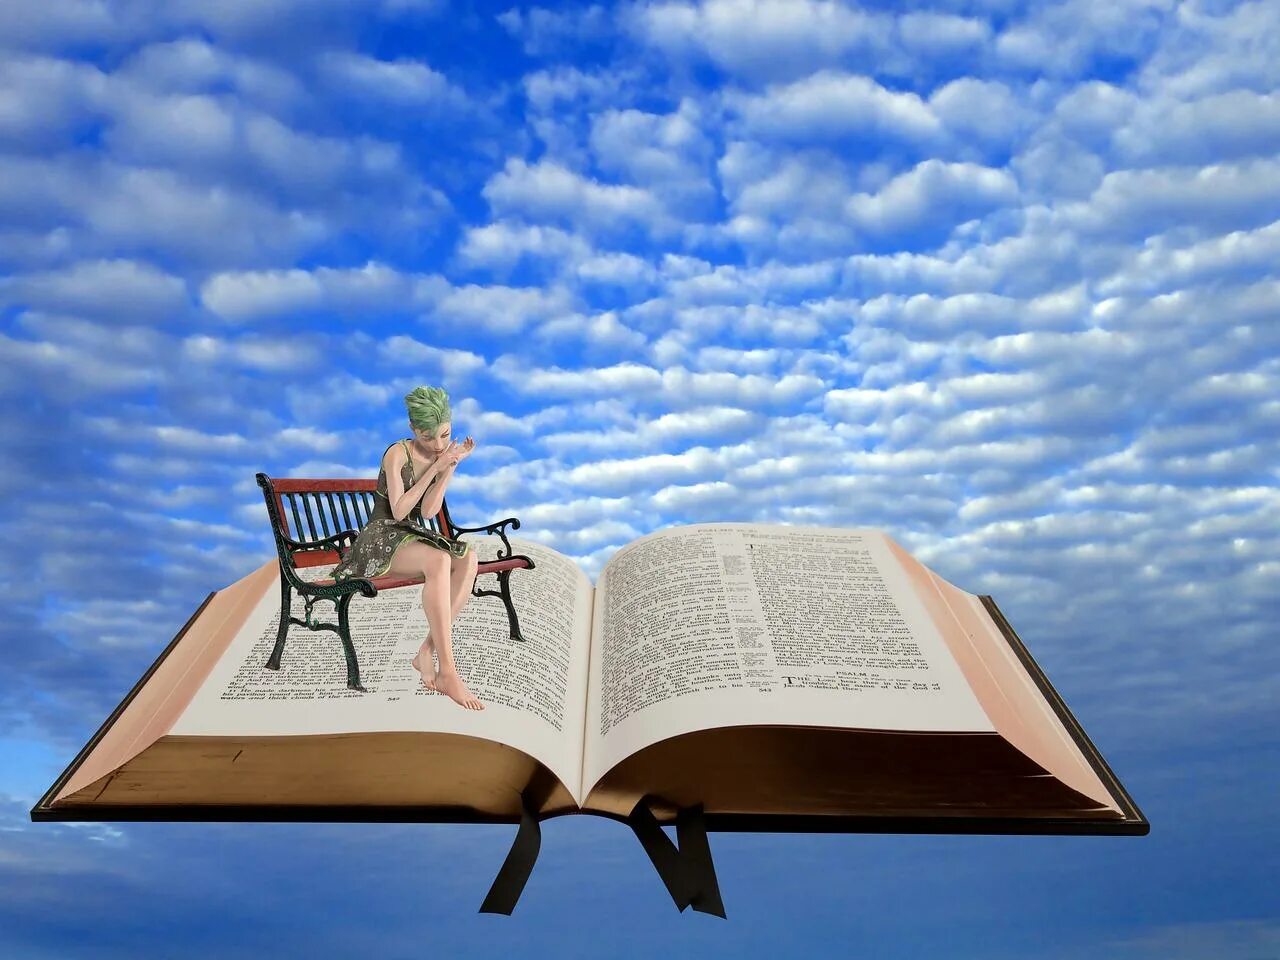 7 жизненных уроков. Книга человек. Жизненный урок. Книги раскрытые на фоне неба. Раскрытая книга на фоне неба.